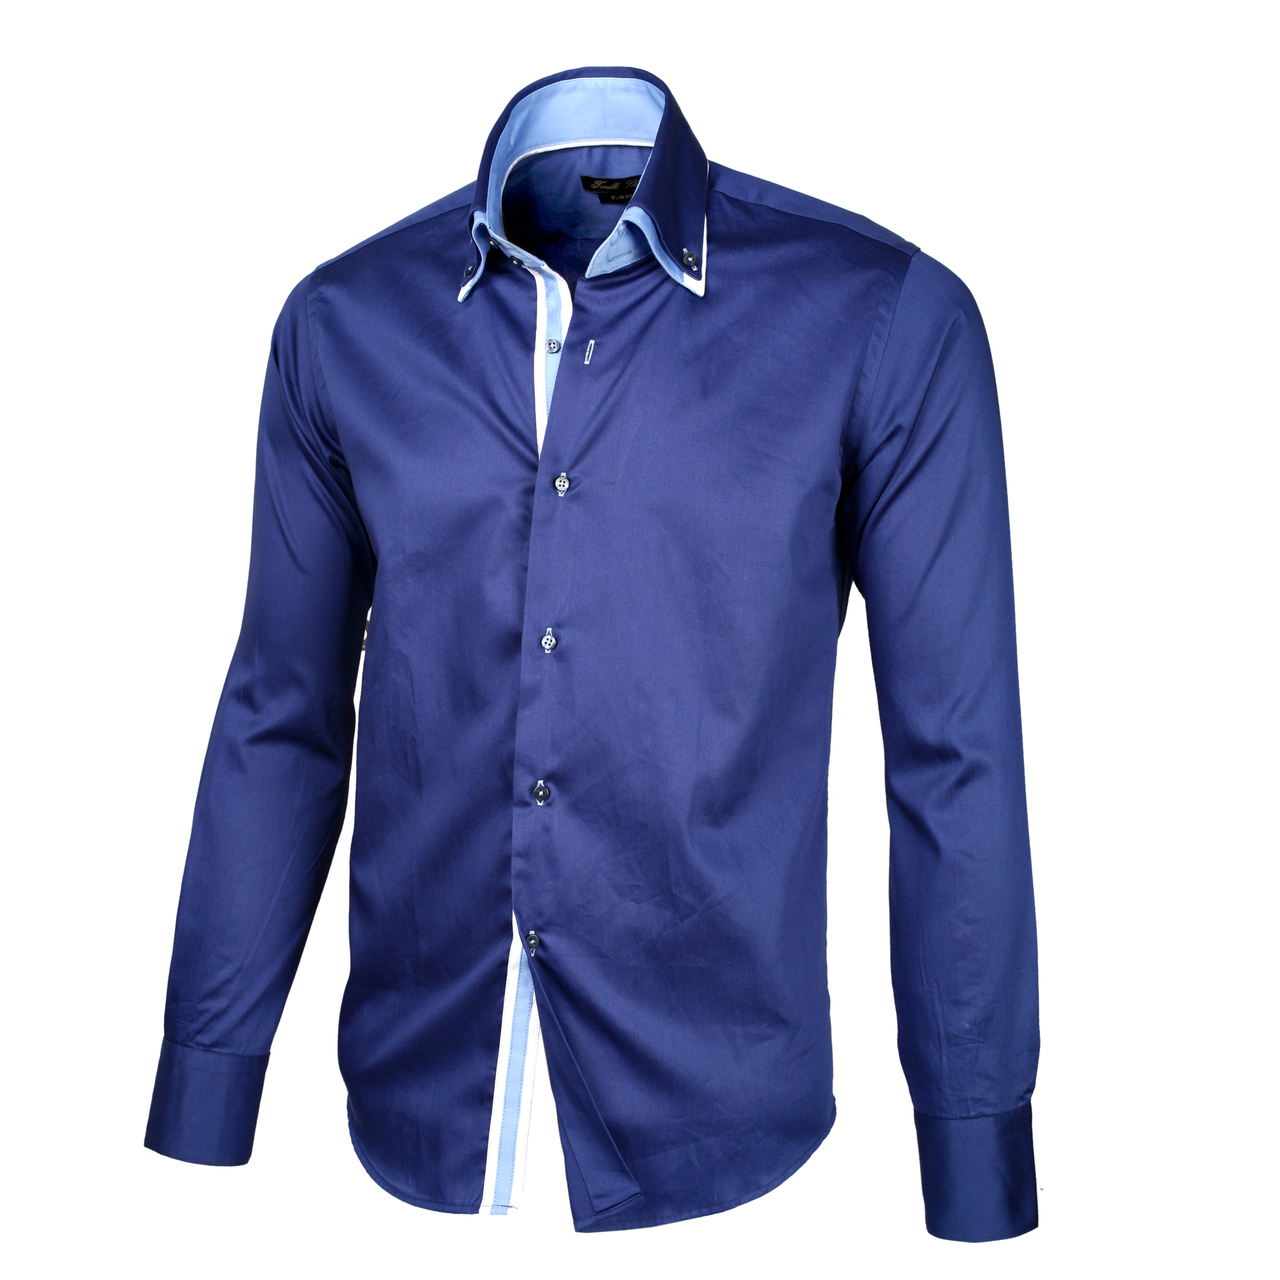 Рубашка мужская купить в интернет магазине. Рубашка мужская Mavi m021190-80692. Синяя рубашка. Синяя рубашка мужская. Красивые рубашки для мужчин.